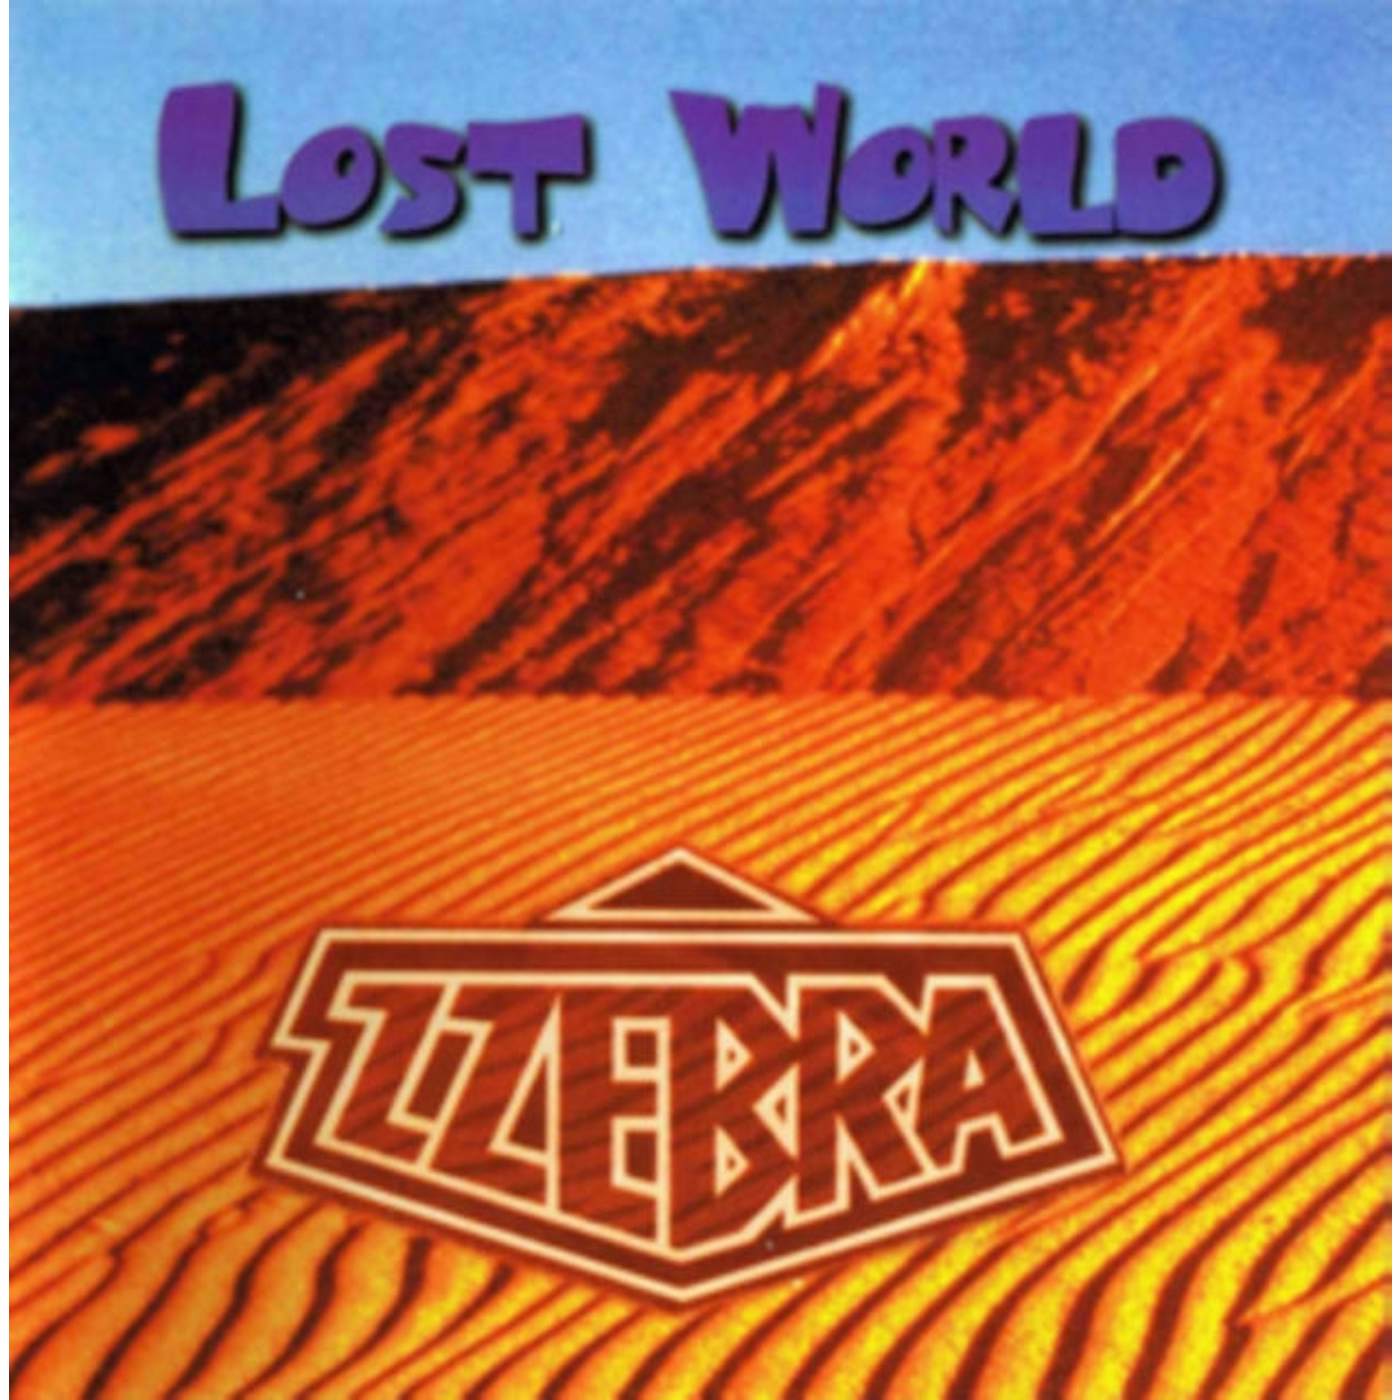 Zzebra CD - Lost World